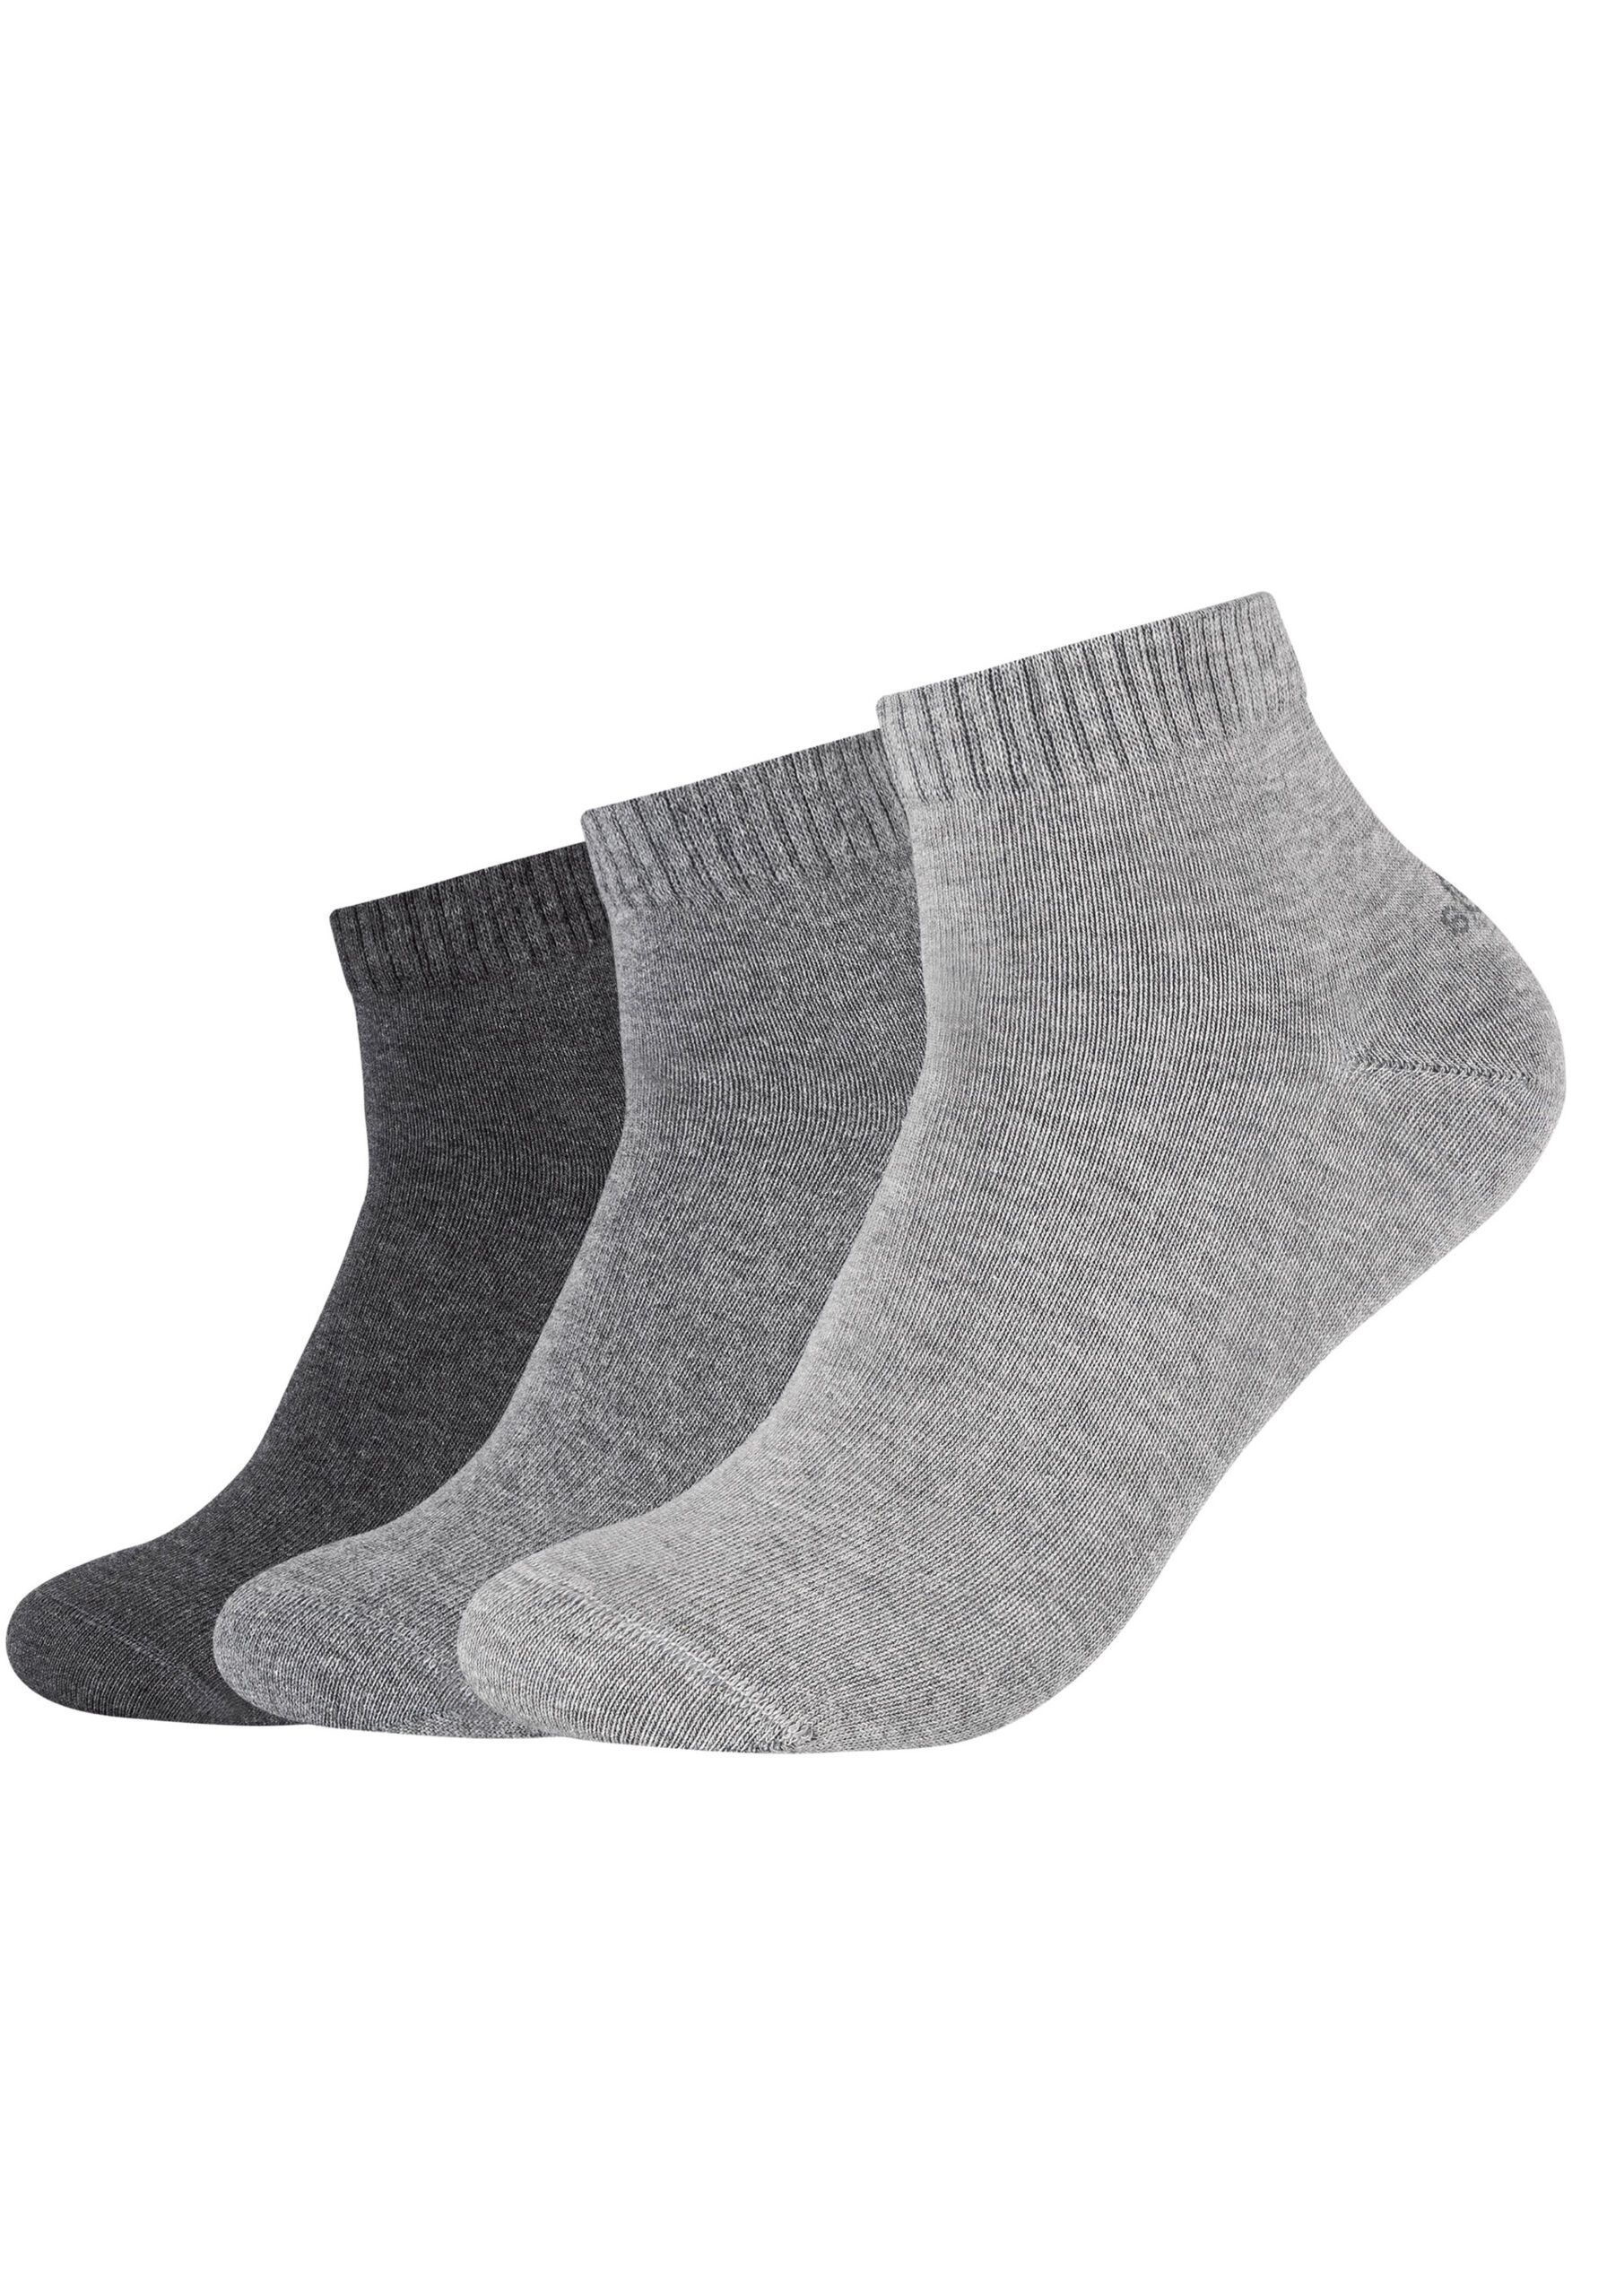 s.Oliver Unisex Paar Socken Anthrazit - Grau Quarter Sneaker 3 Sockenduo